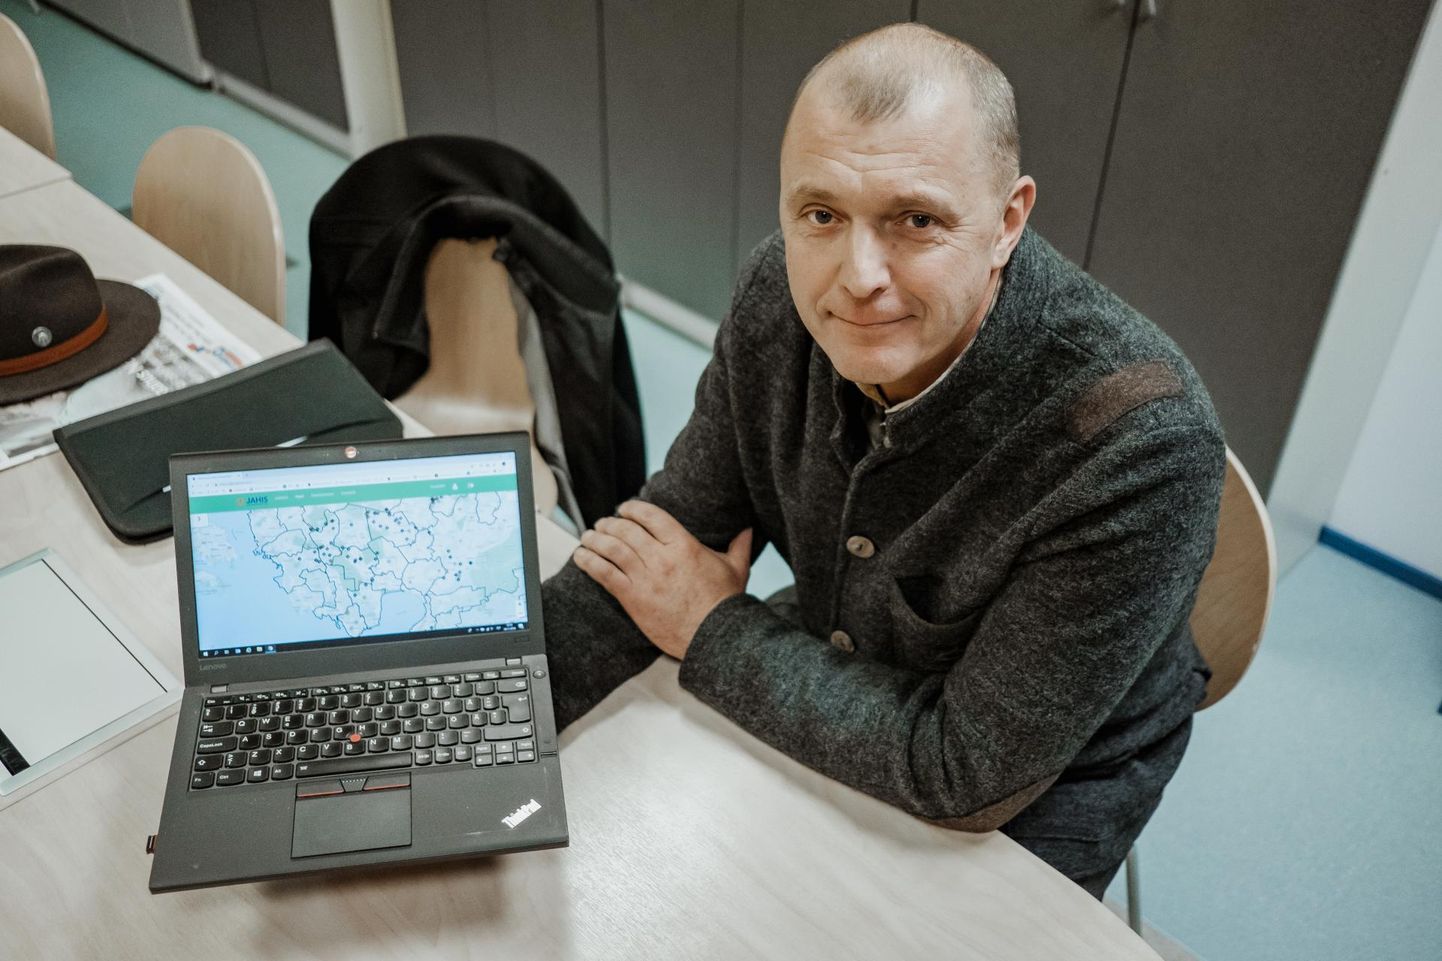 Eesti jahimeeste seltsi juhatuse liige Jaanus Põldmaa näitab arvutiekraanil, kuidas karu, ilvese või hundi loendus kastikestena välja näeb.